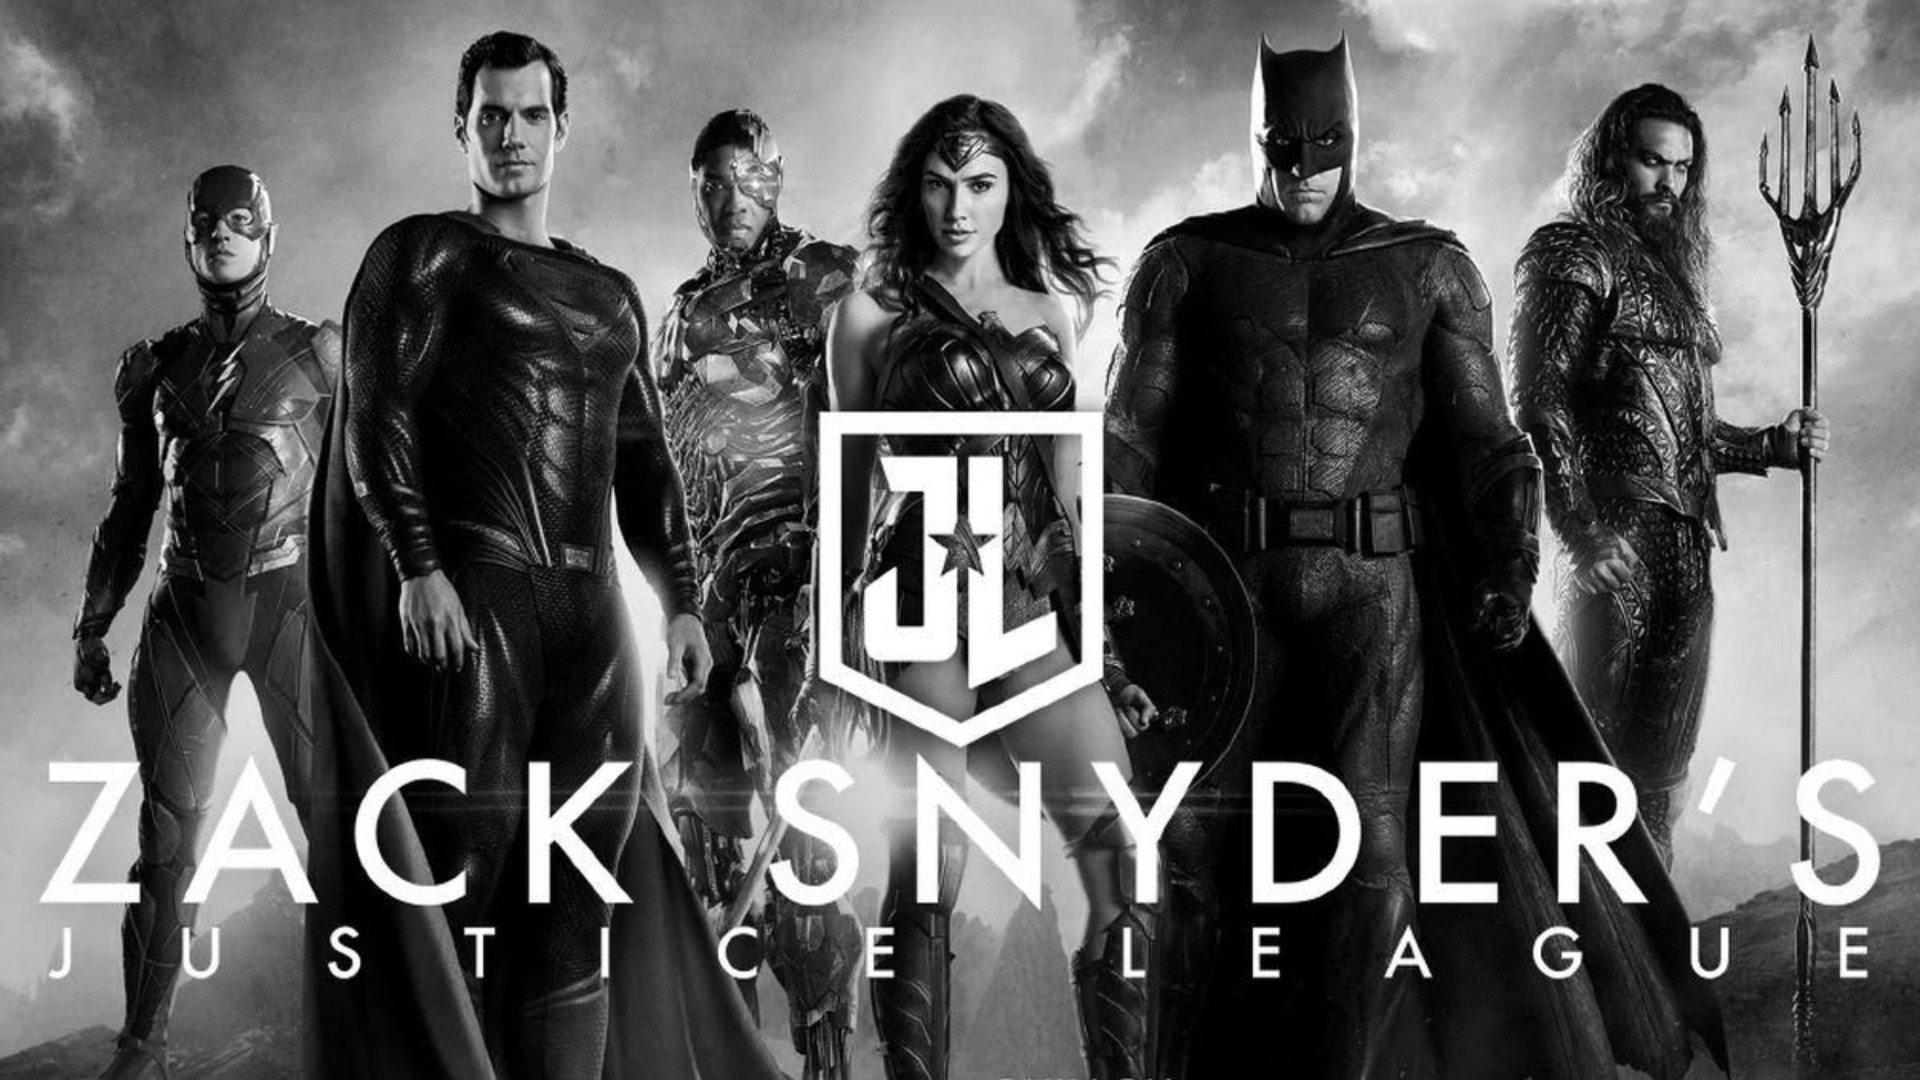 Warner | Liga da Justiça de Zack Snyder chegará ao Brasil dublado